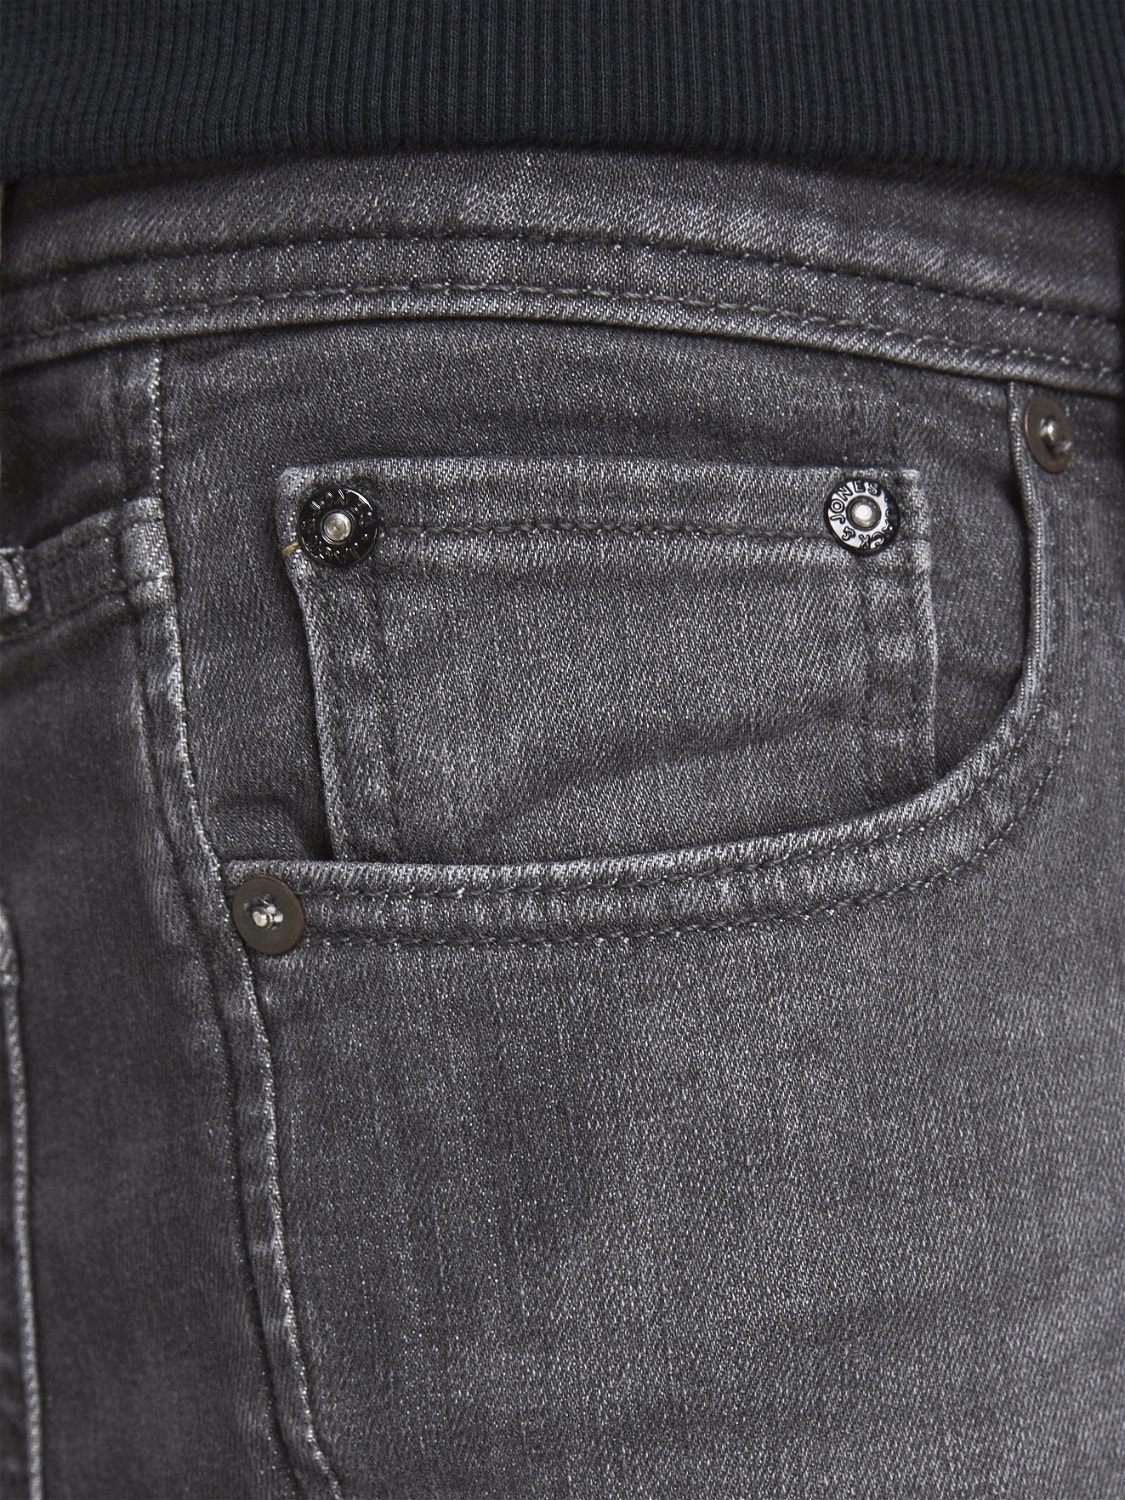 Jack & Jones JJITOM JJORIGINAL AGI 135 50SPS Skinny fit jeans -Grey Denim - 12187296